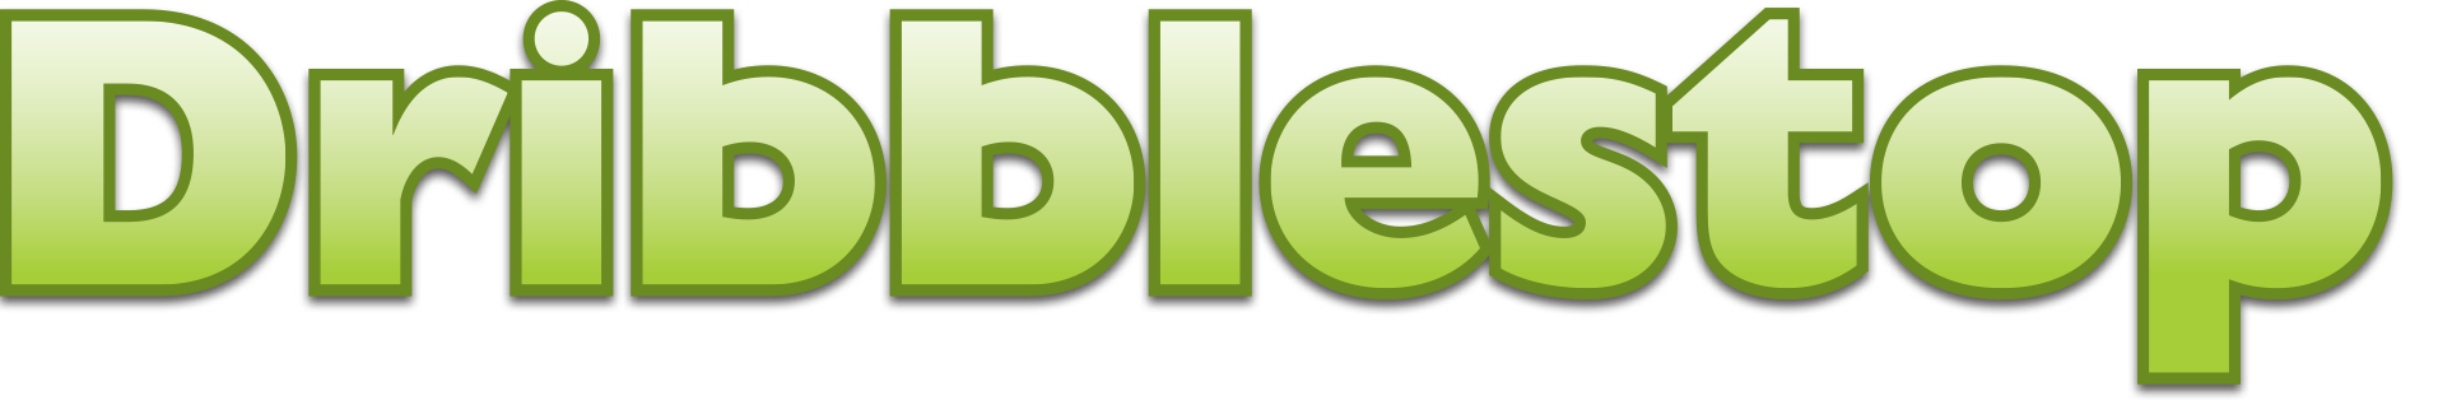 Dribblestop Logo